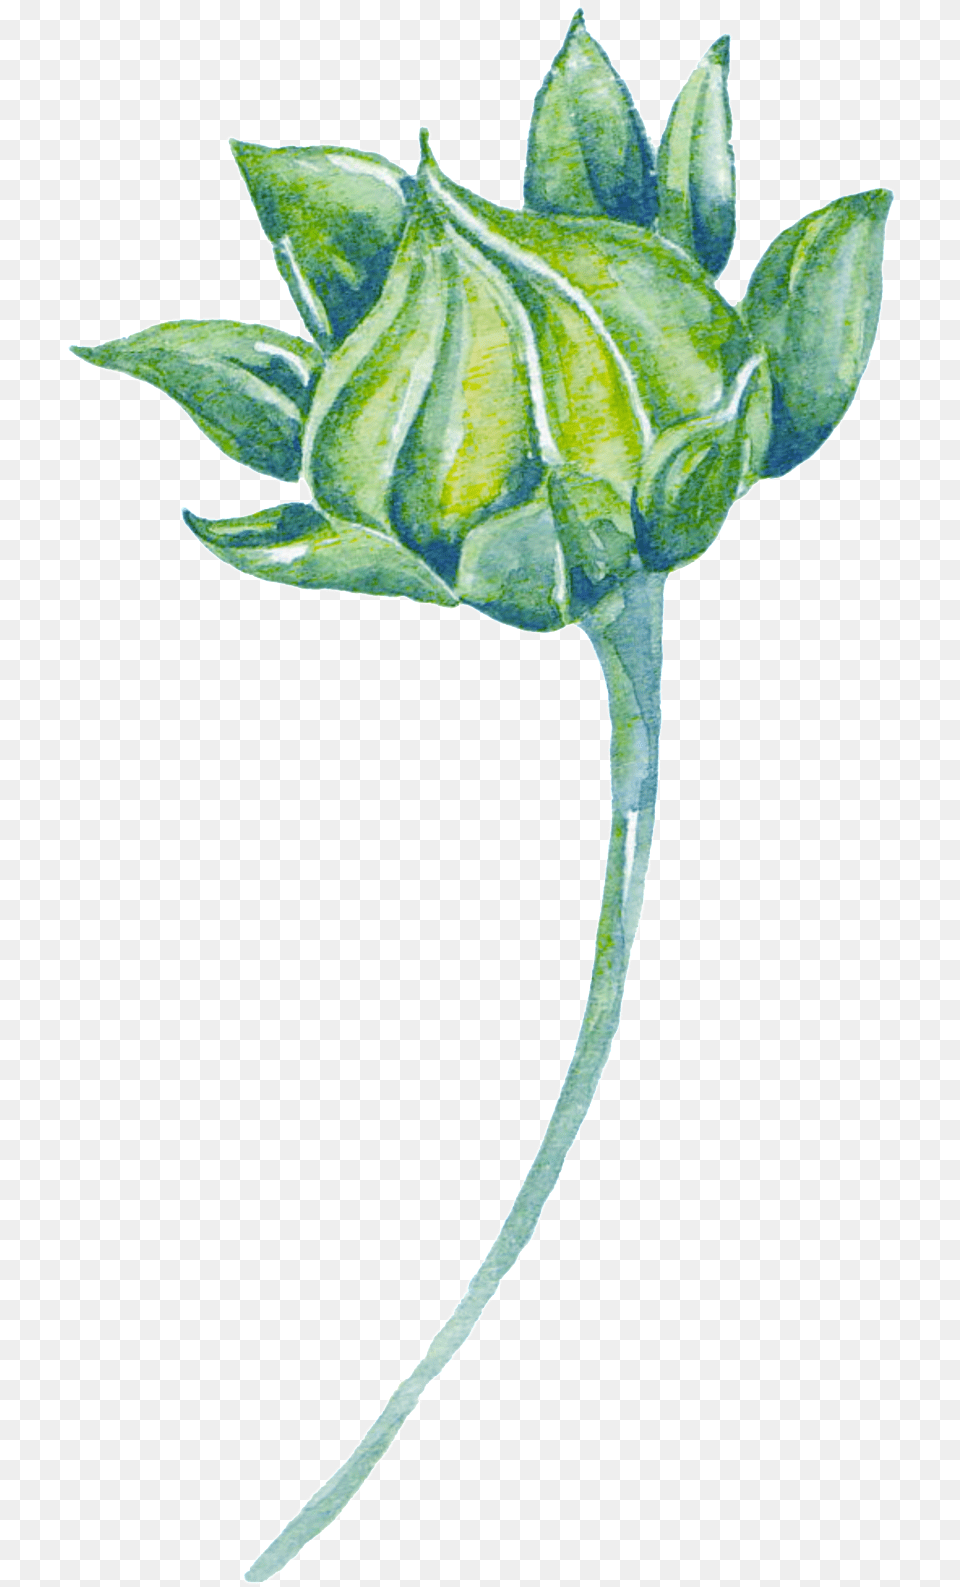 Green Watercolor Plant Cartoon Transparent Watercolor Plant Transparent, Bud, Flower, Leaf, Sprout Free Png